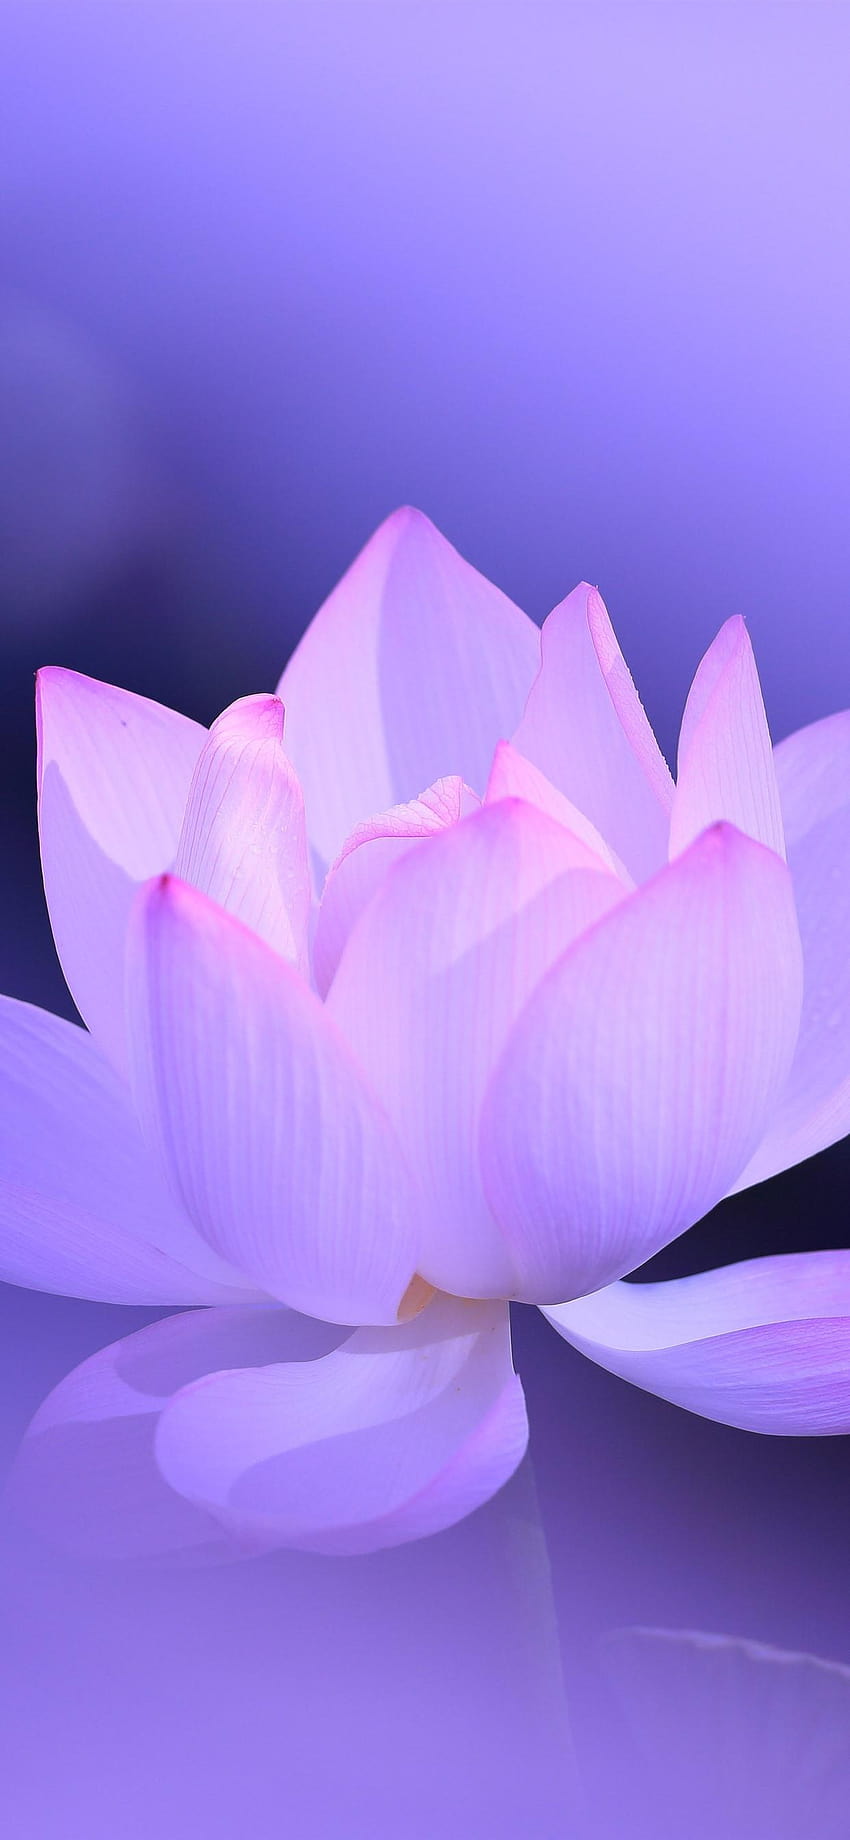 Pink lotus, petals, purple background, hazy, beautiful flower, cute lotus flowers phone HD phone wallpaper